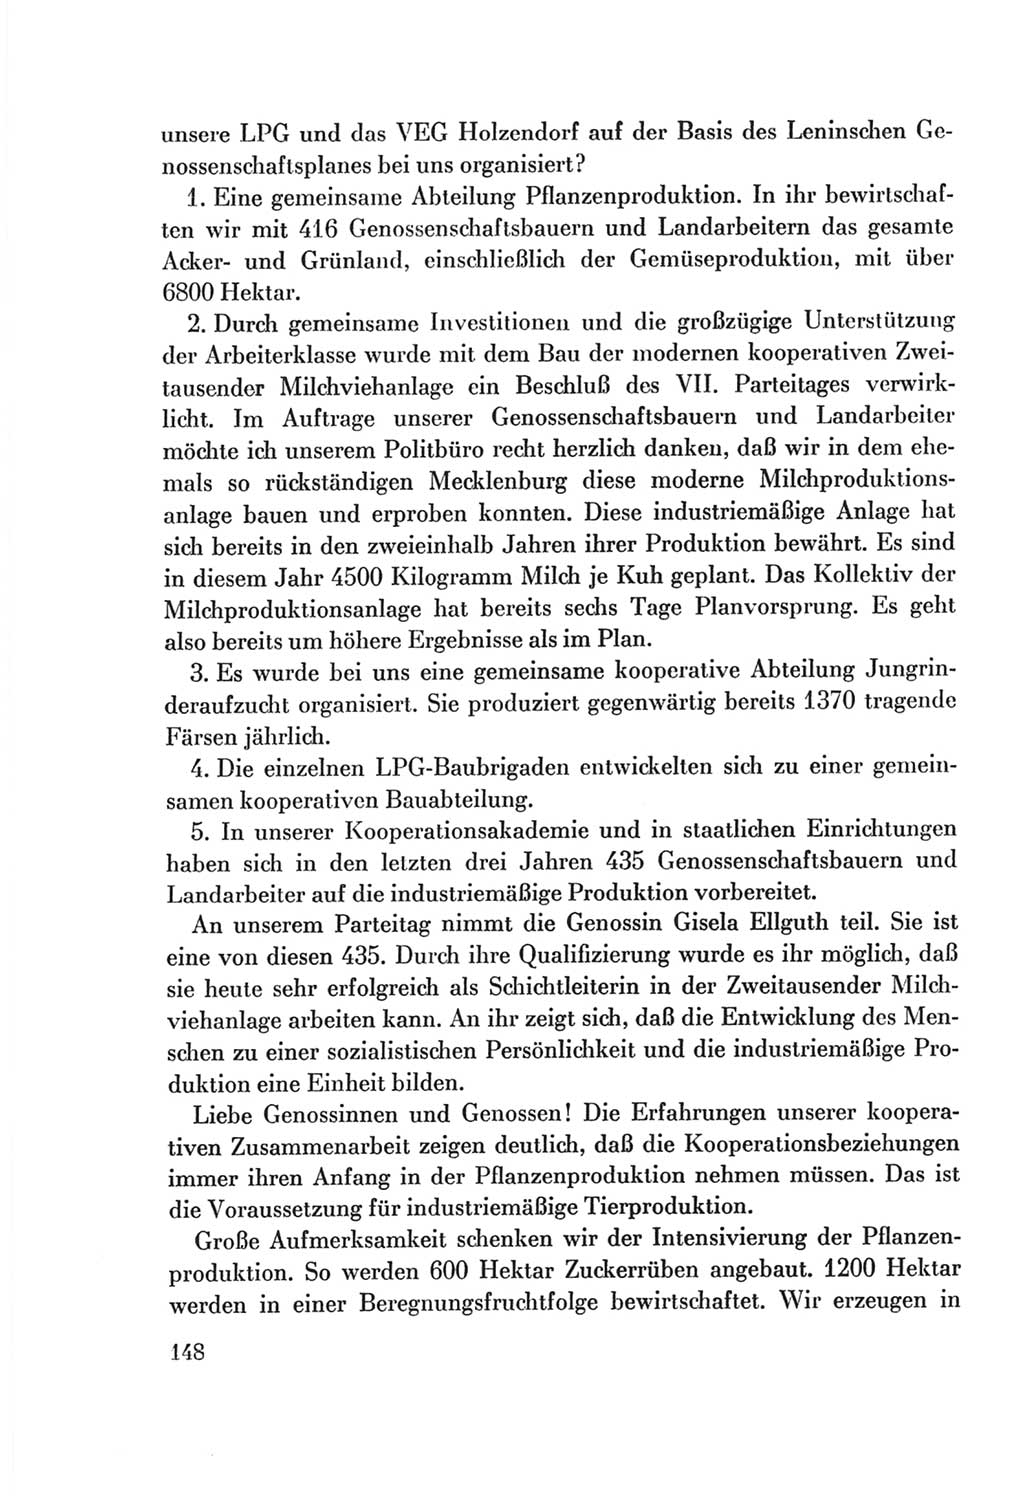 Protokoll der Verhandlungen des Ⅷ. Parteitages der Sozialistischen Einheitspartei Deutschlands (SED) [Deutsche Demokratische Republik (DDR)] 1971, Band 1, Seite 148 (Prot. Verh. Ⅷ. PT SED DDR 1971, Bd. 1, S. 148)